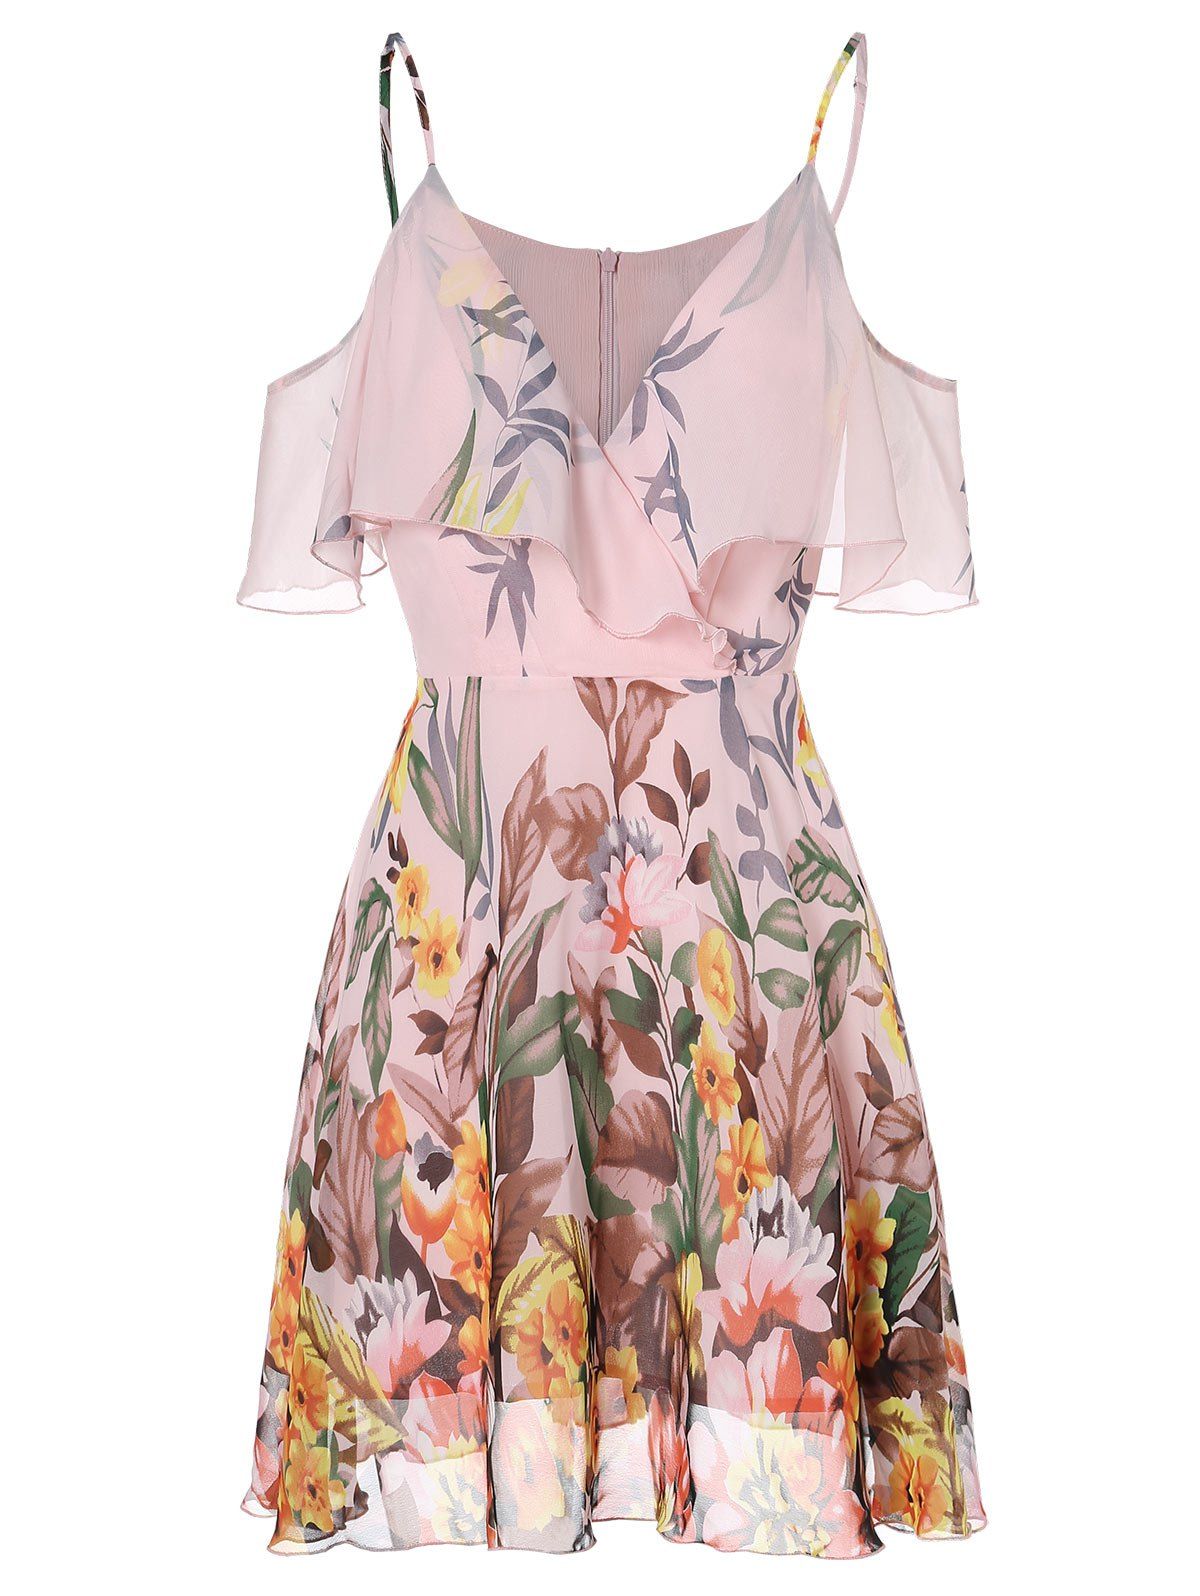 Cami Cold Shoulder Printed Mini Dress - SAKURA PINK L